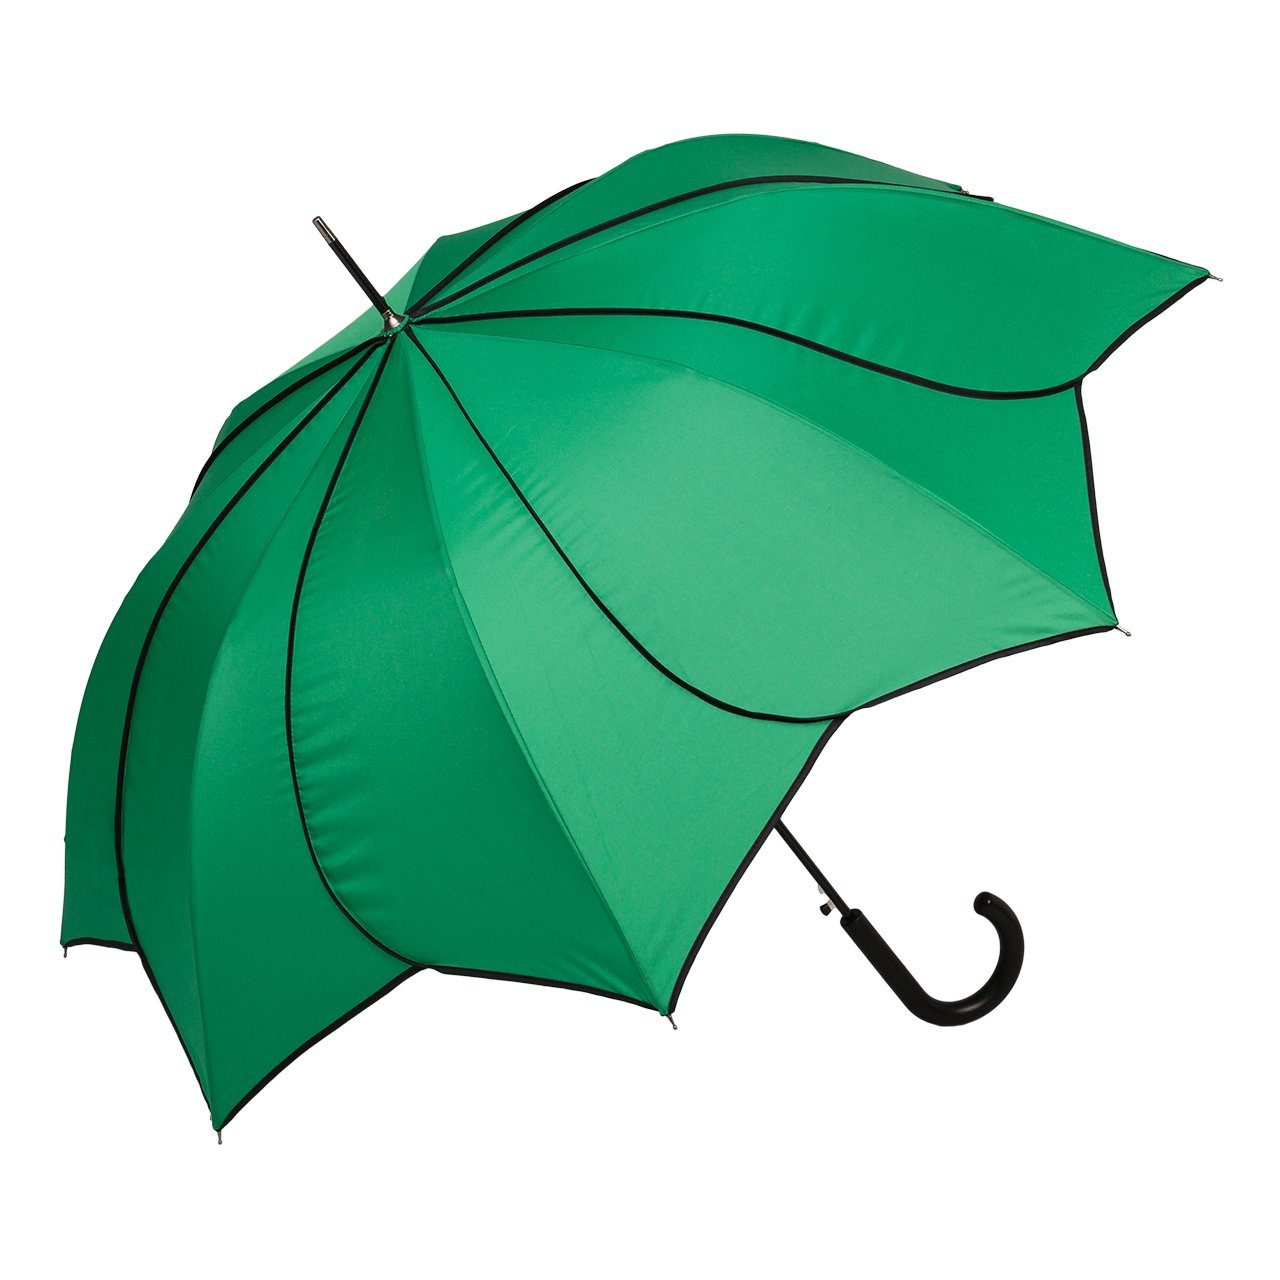 von Lilienfeld Stockregenschirm Regenschirm Sonnenschirm Hochzeitsschirm Minou, Blütenform grün mit schwarzer Ziernaht